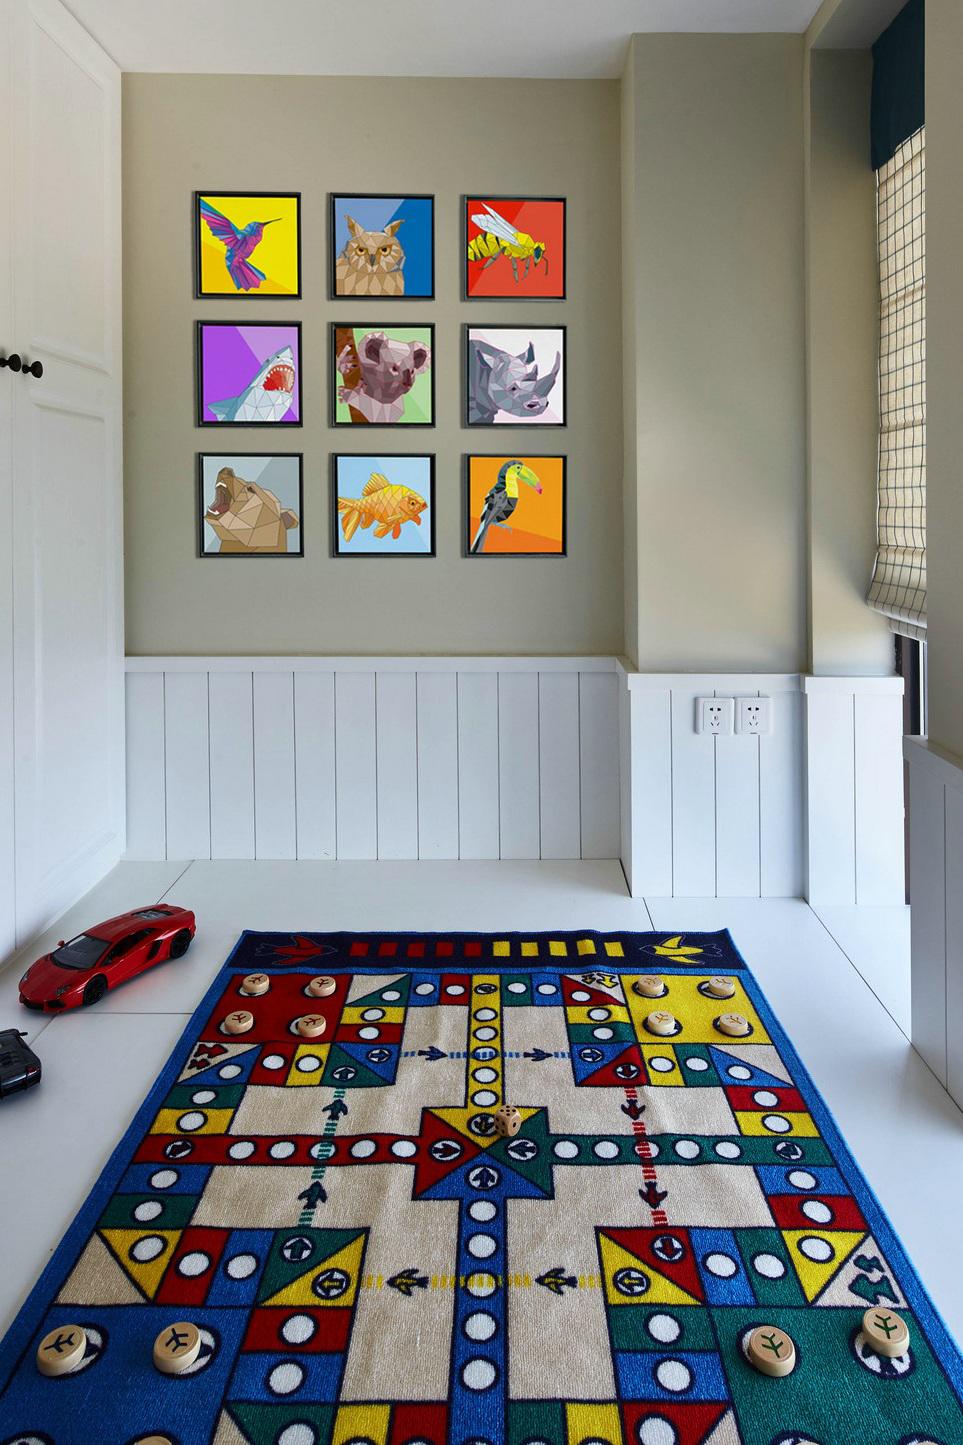 美式儿童房七彩抽象画照片墙装饰效果图